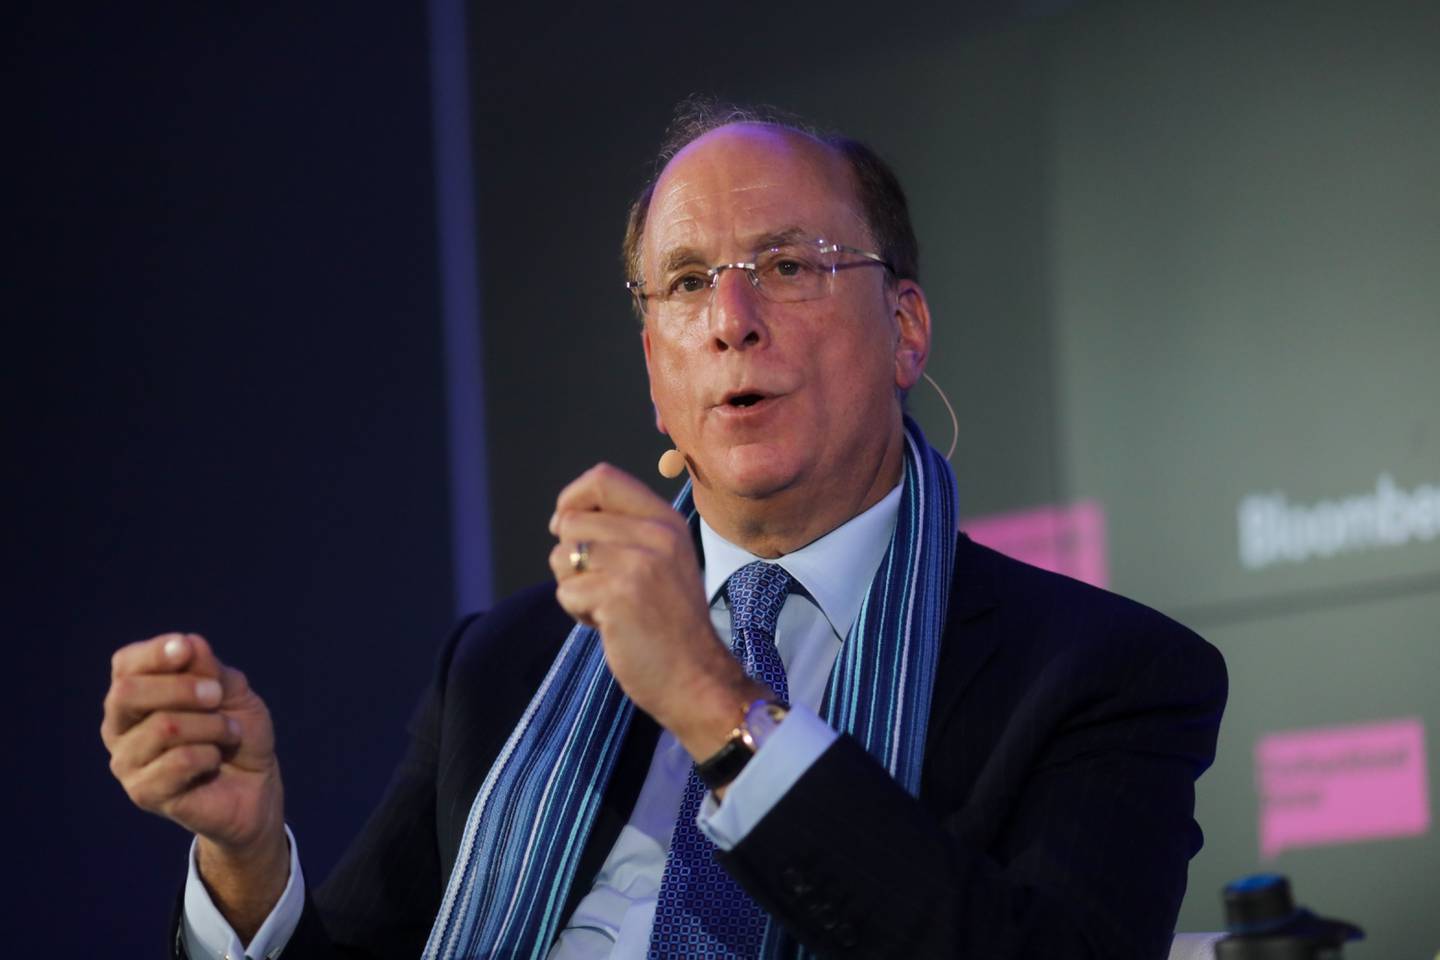 El director ejecutivo de BlackRock Inc. gesticula mientras habla durante un evento de Bloomberg el día de la inauguración del Foro Económico Mundial (FEM) en Davos, Suiza, el martes 21 de enero de 2020.dfd